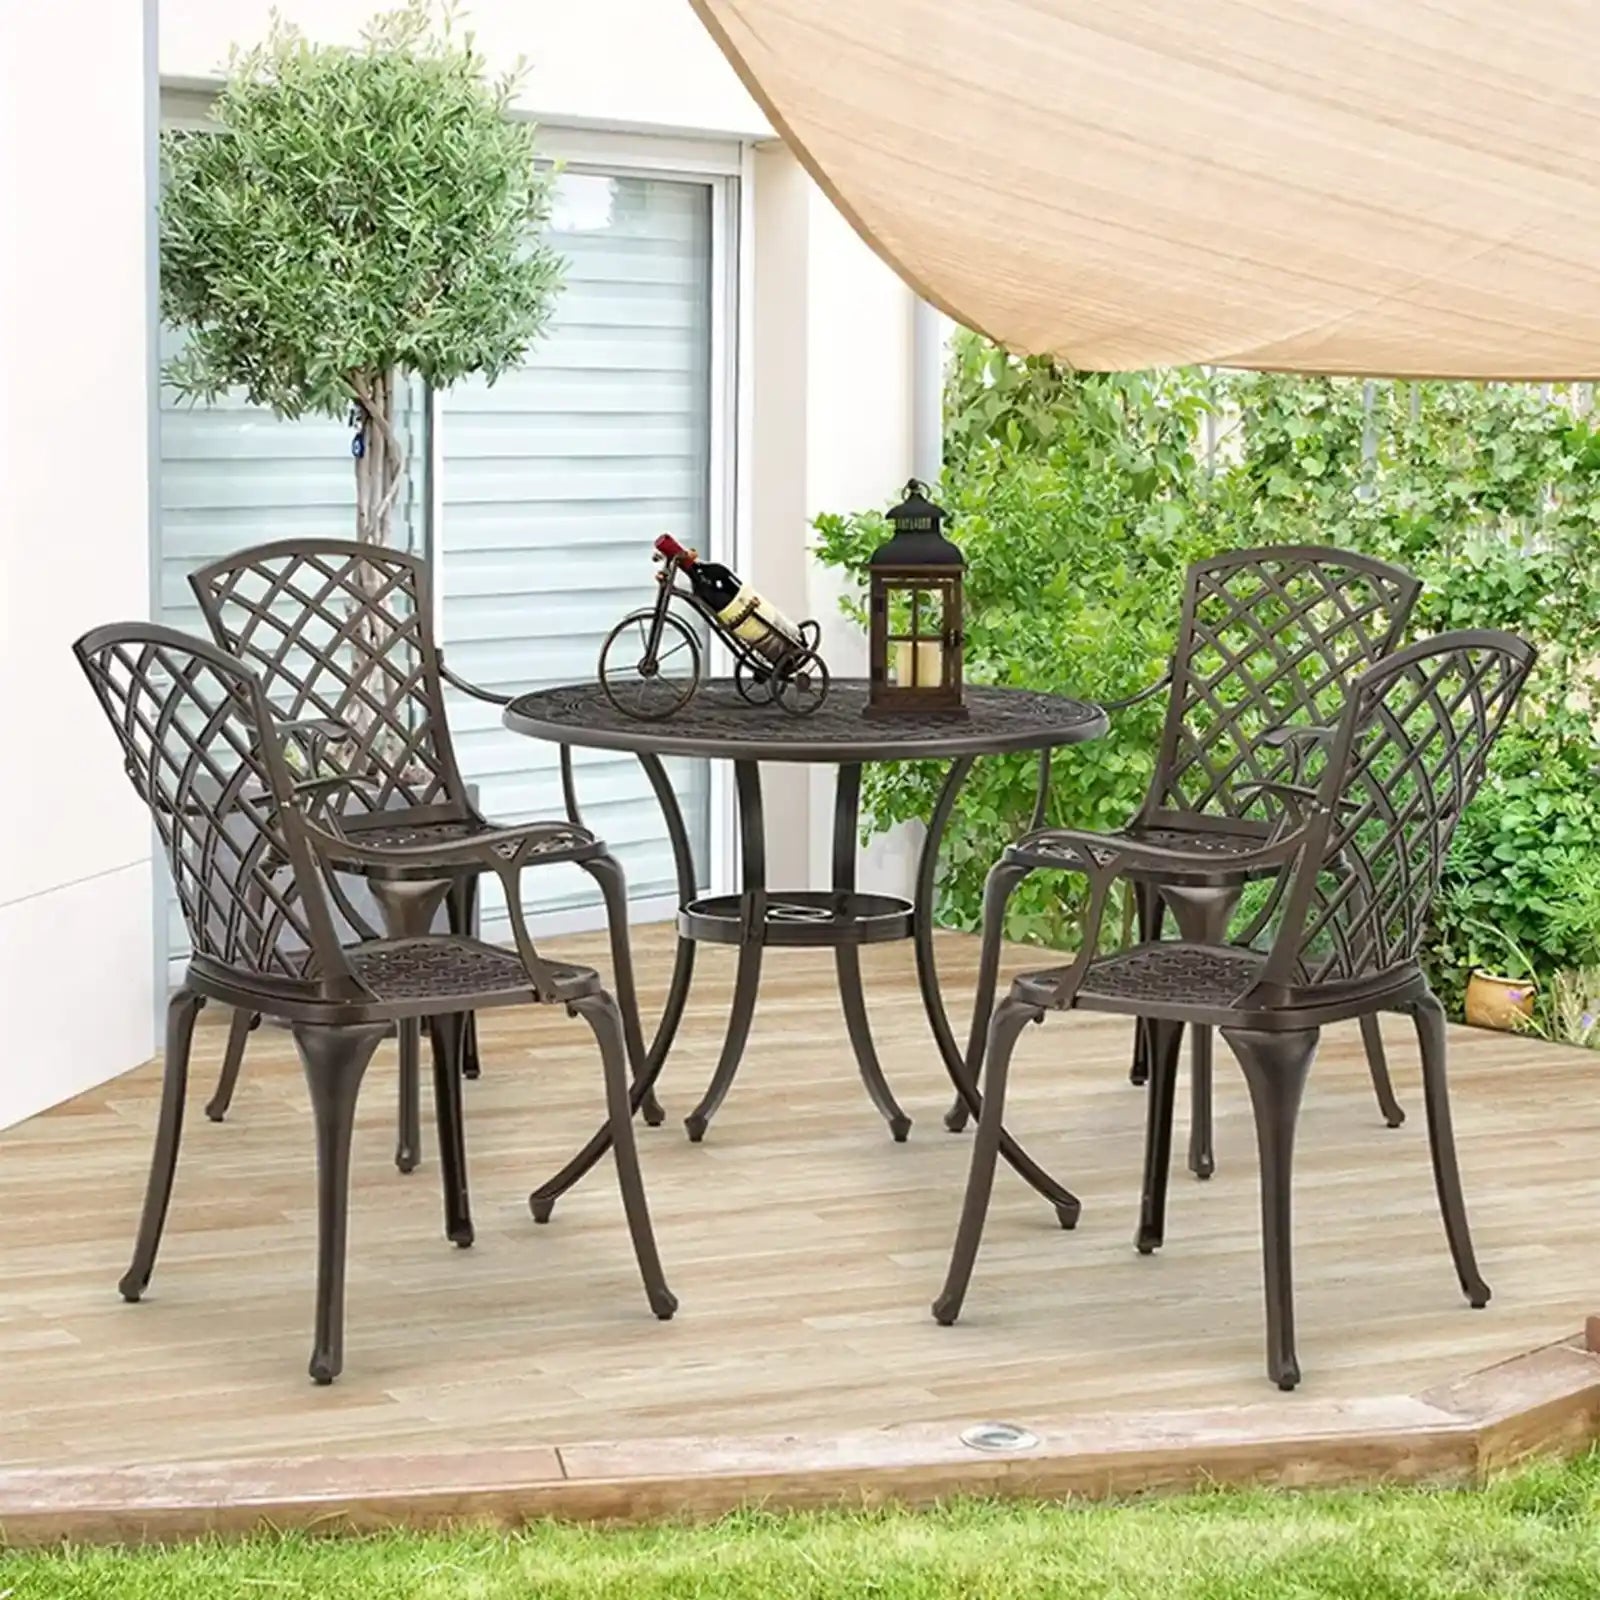 Juego de comedor para patio de 5 piezas, juego de conversación de muebles de exterior de aluminio fundido con mesa redonda